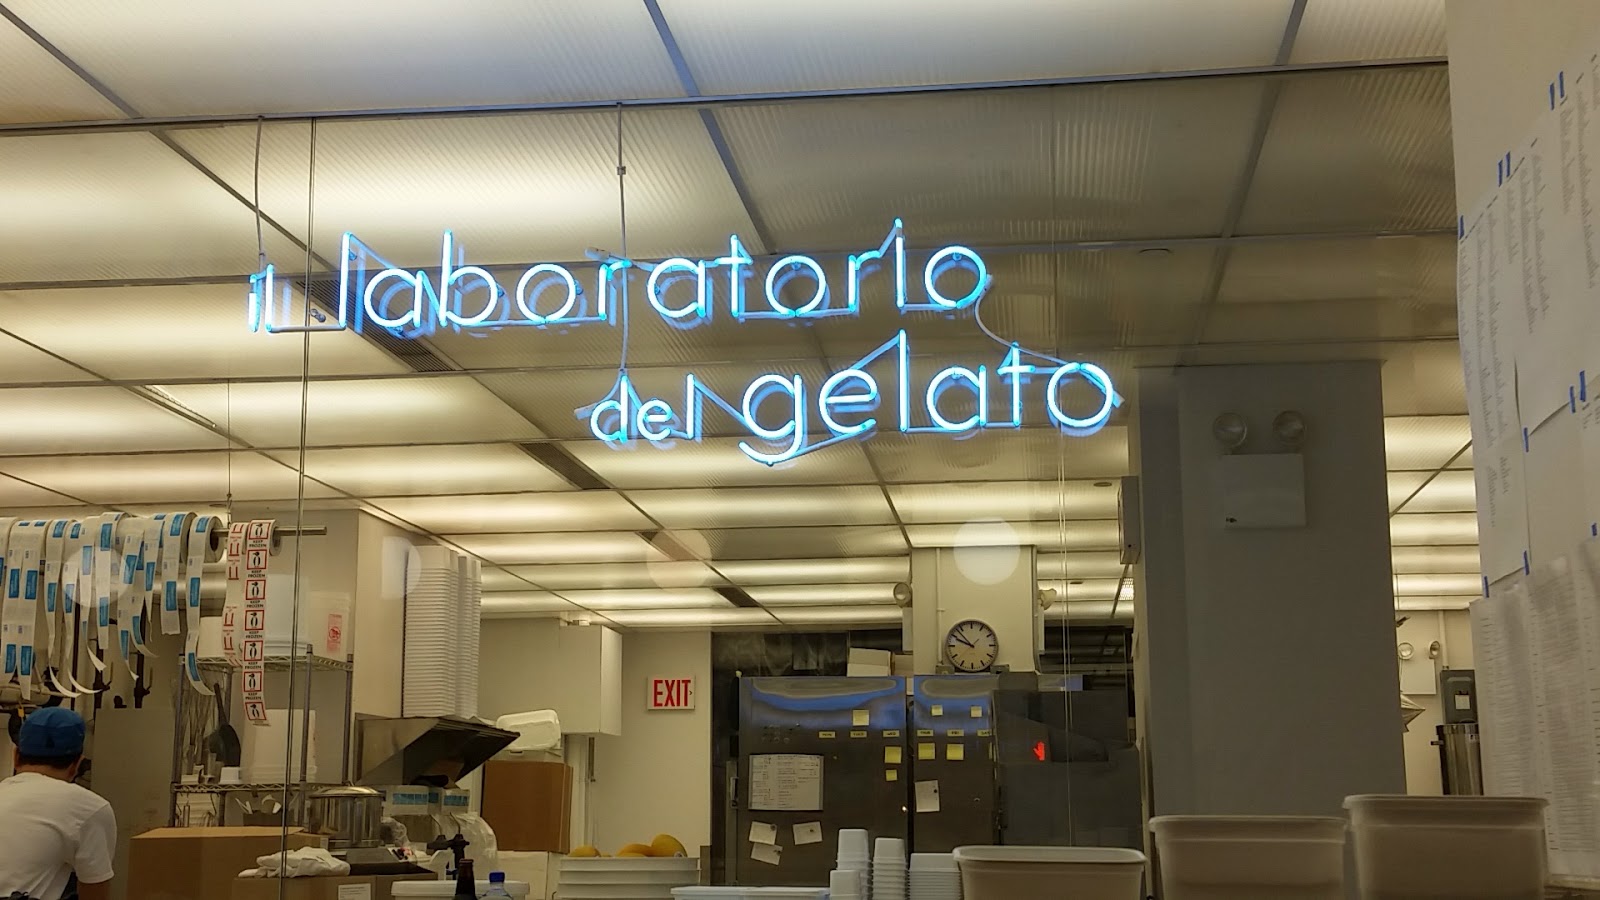 Photo of il laboratorio del gelato in New York City, New York, United States - 2 Picture of Food, Point of interest, Establishment, Store